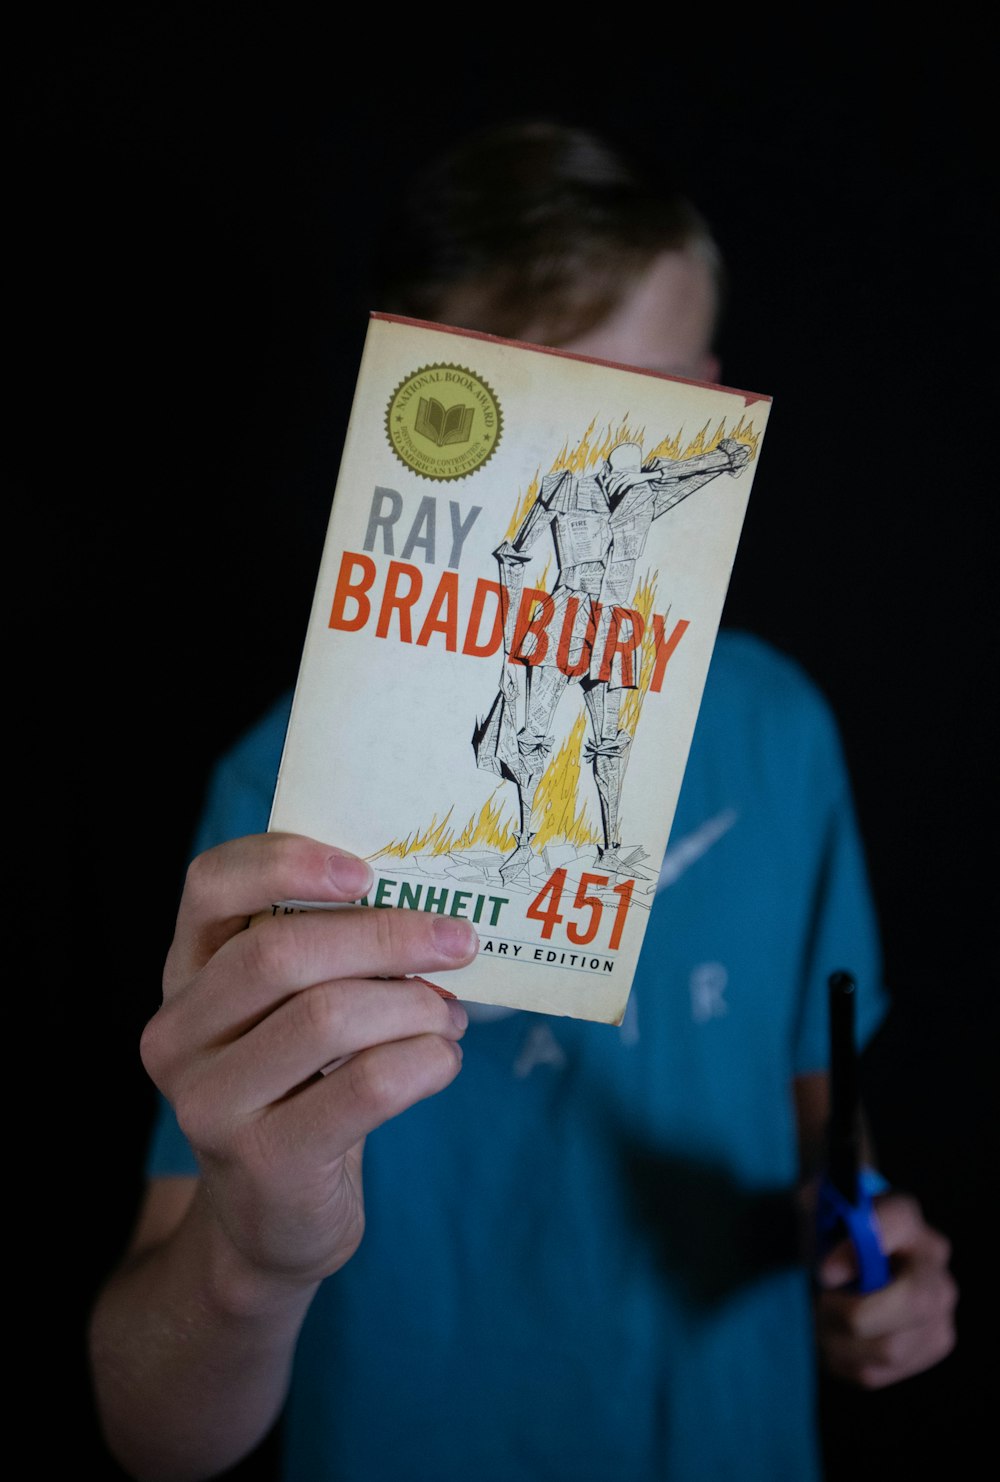 persona sosteniendo un libro de Ray Bradbury